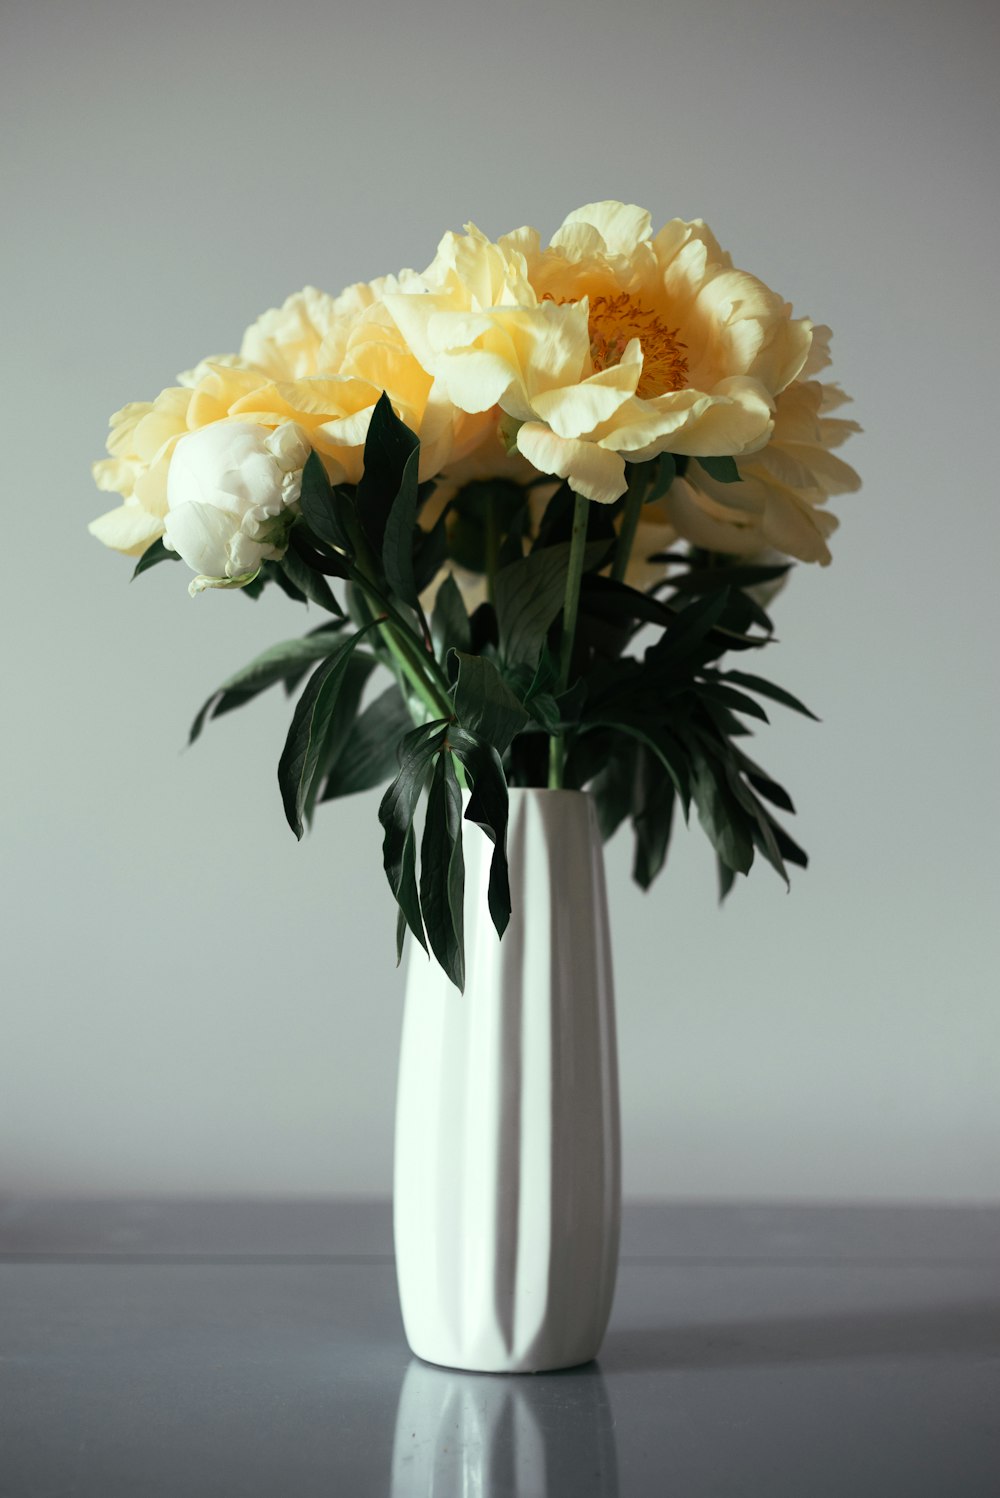 um vaso branco cheio de flores amarelas e brancas